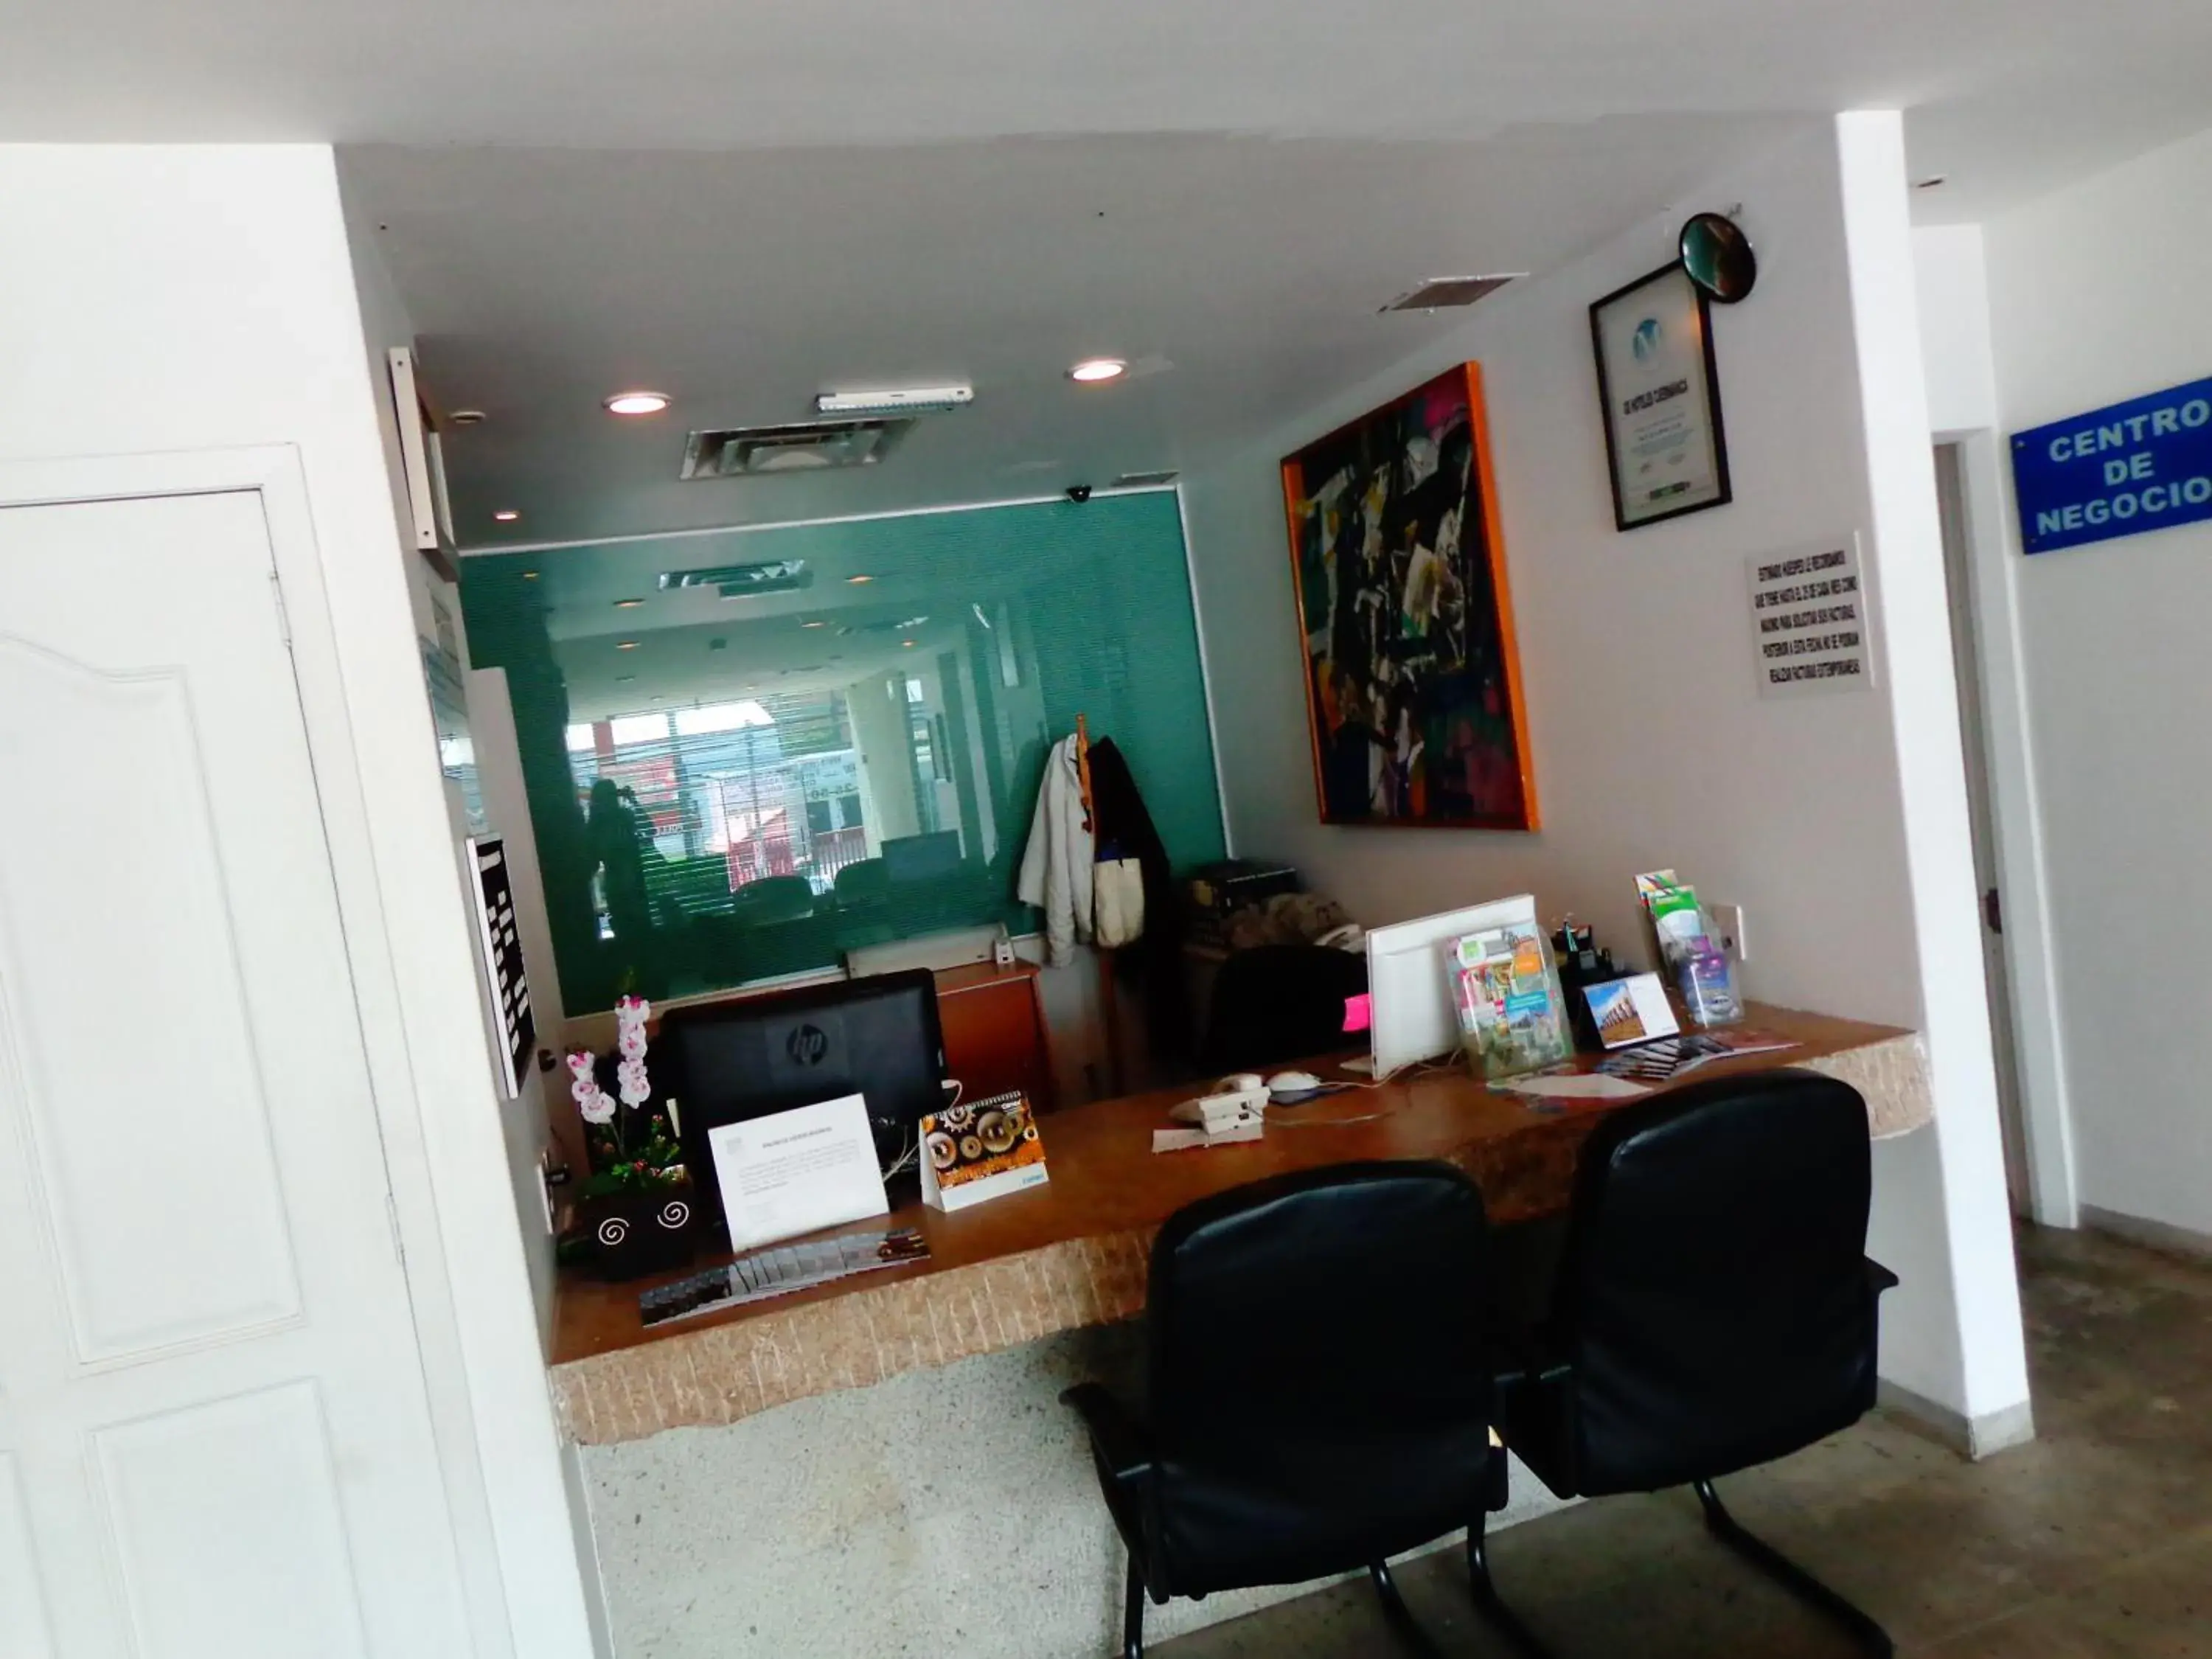 Area and facilities, Lobby/Reception in GS Cuernavaca